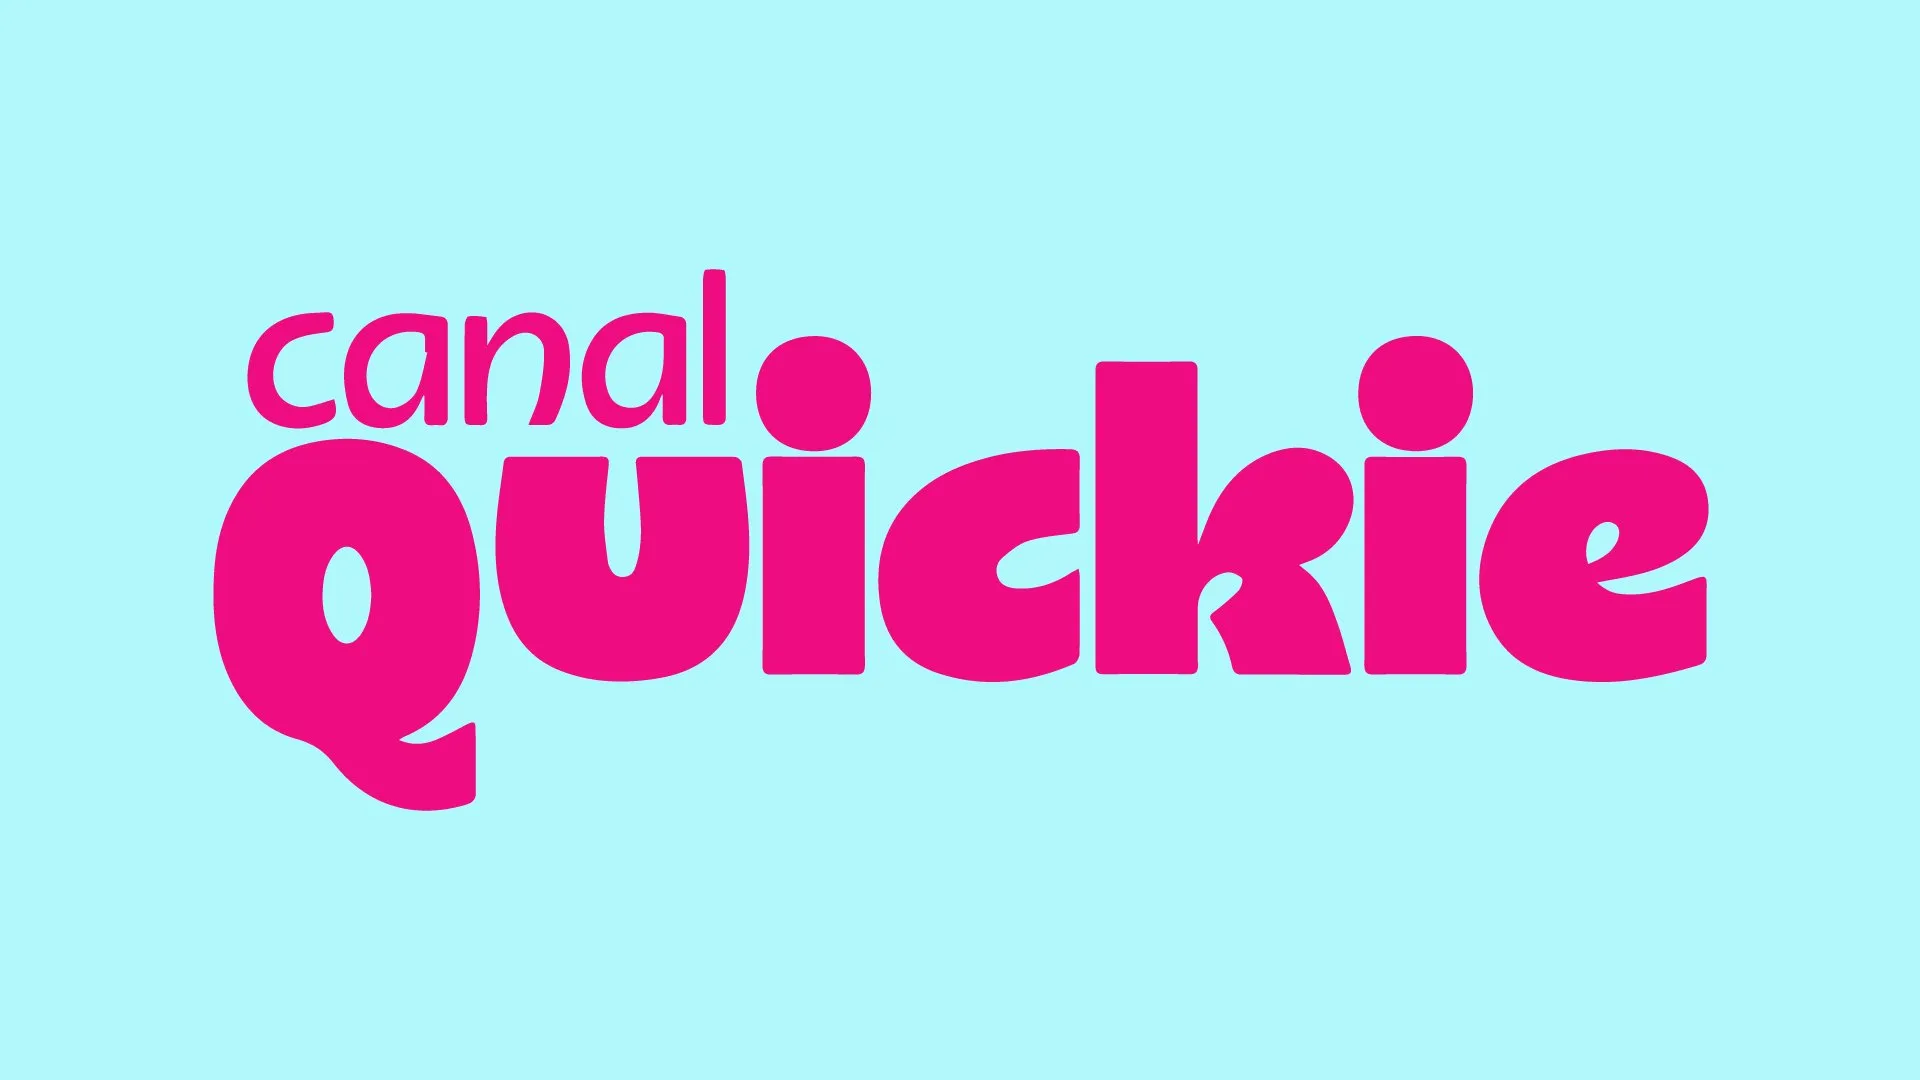 nuevo canal de televisión Quickie